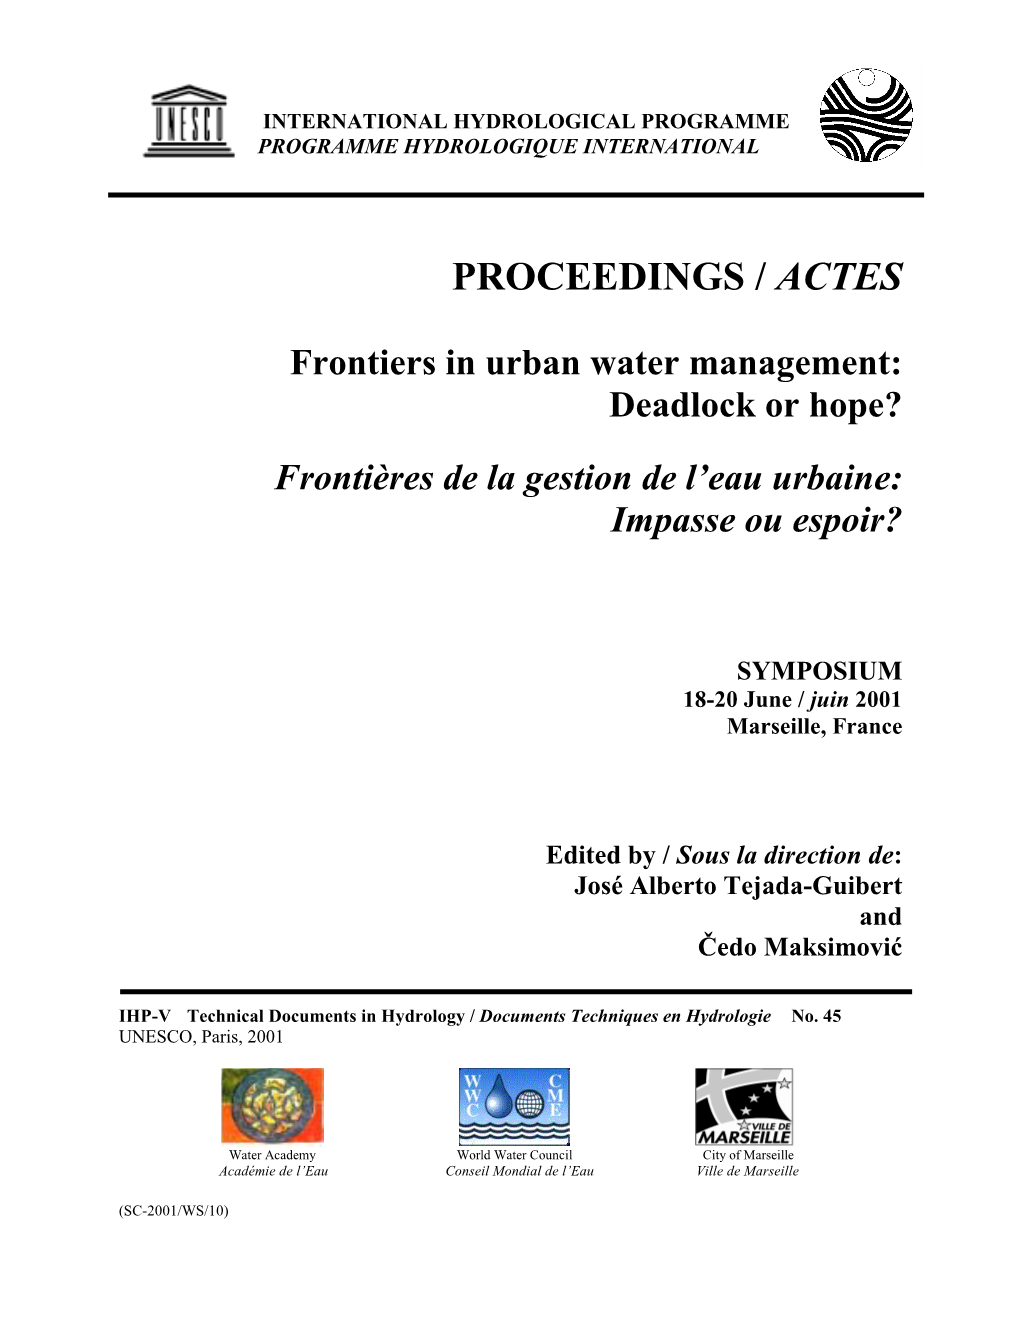 Frontiers in Urban Water Management: Deadlock Or Hope?